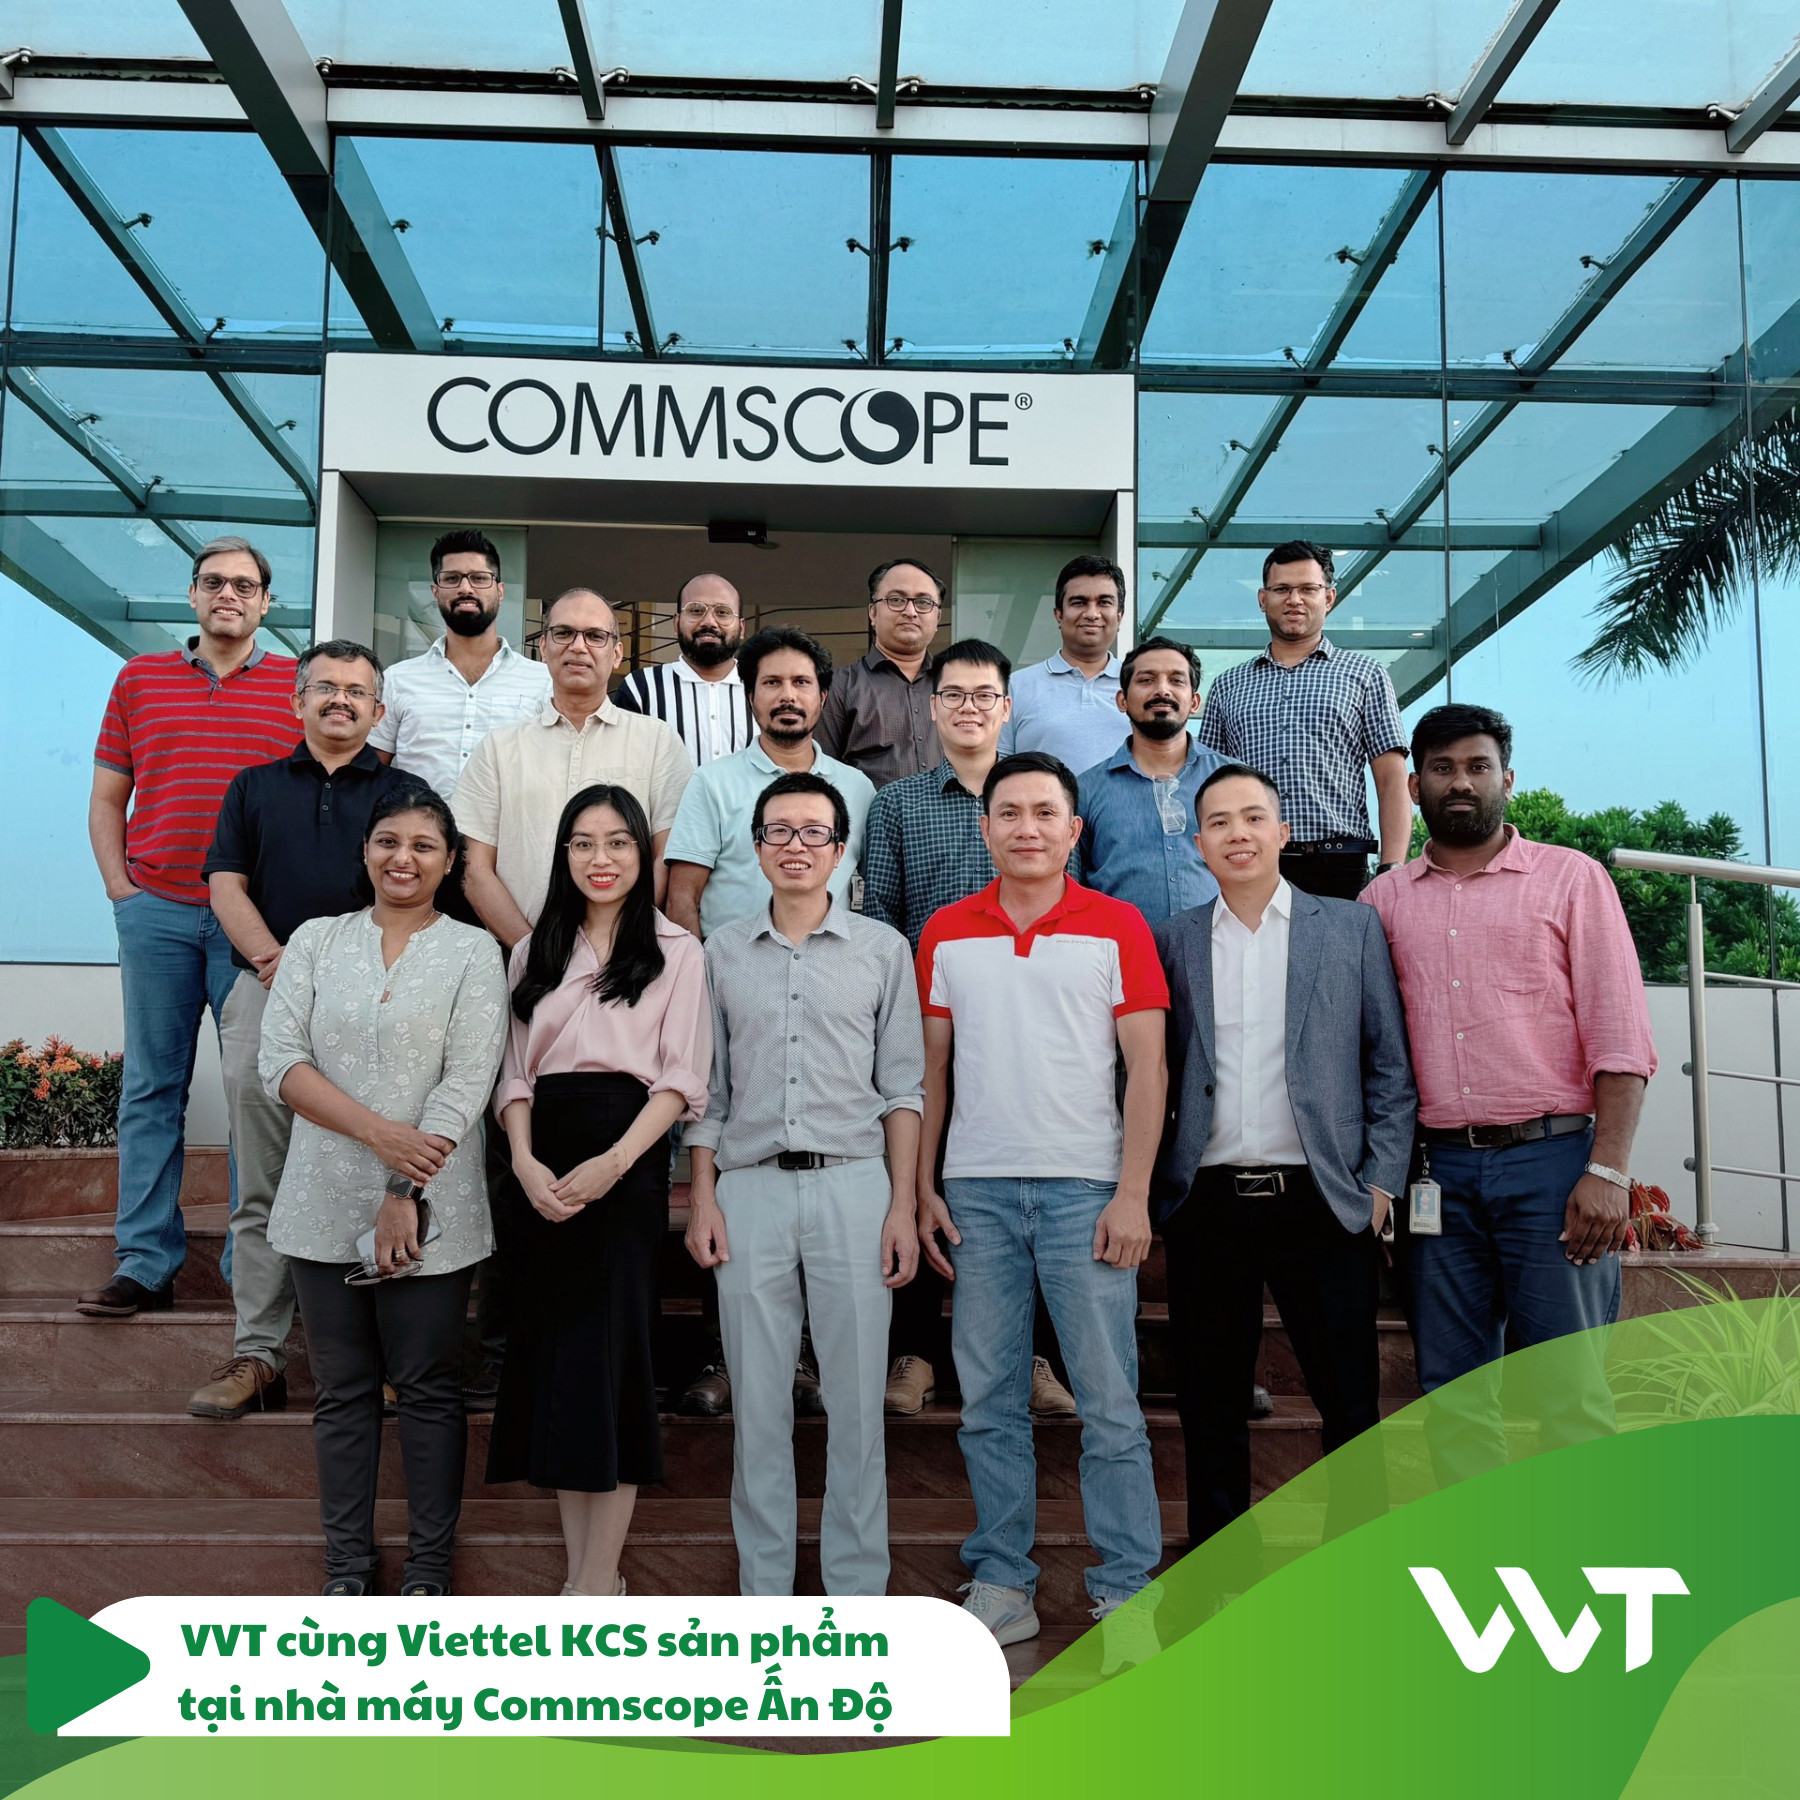 VVT cùng Viettel KCS tại CommScope Ấn Độ